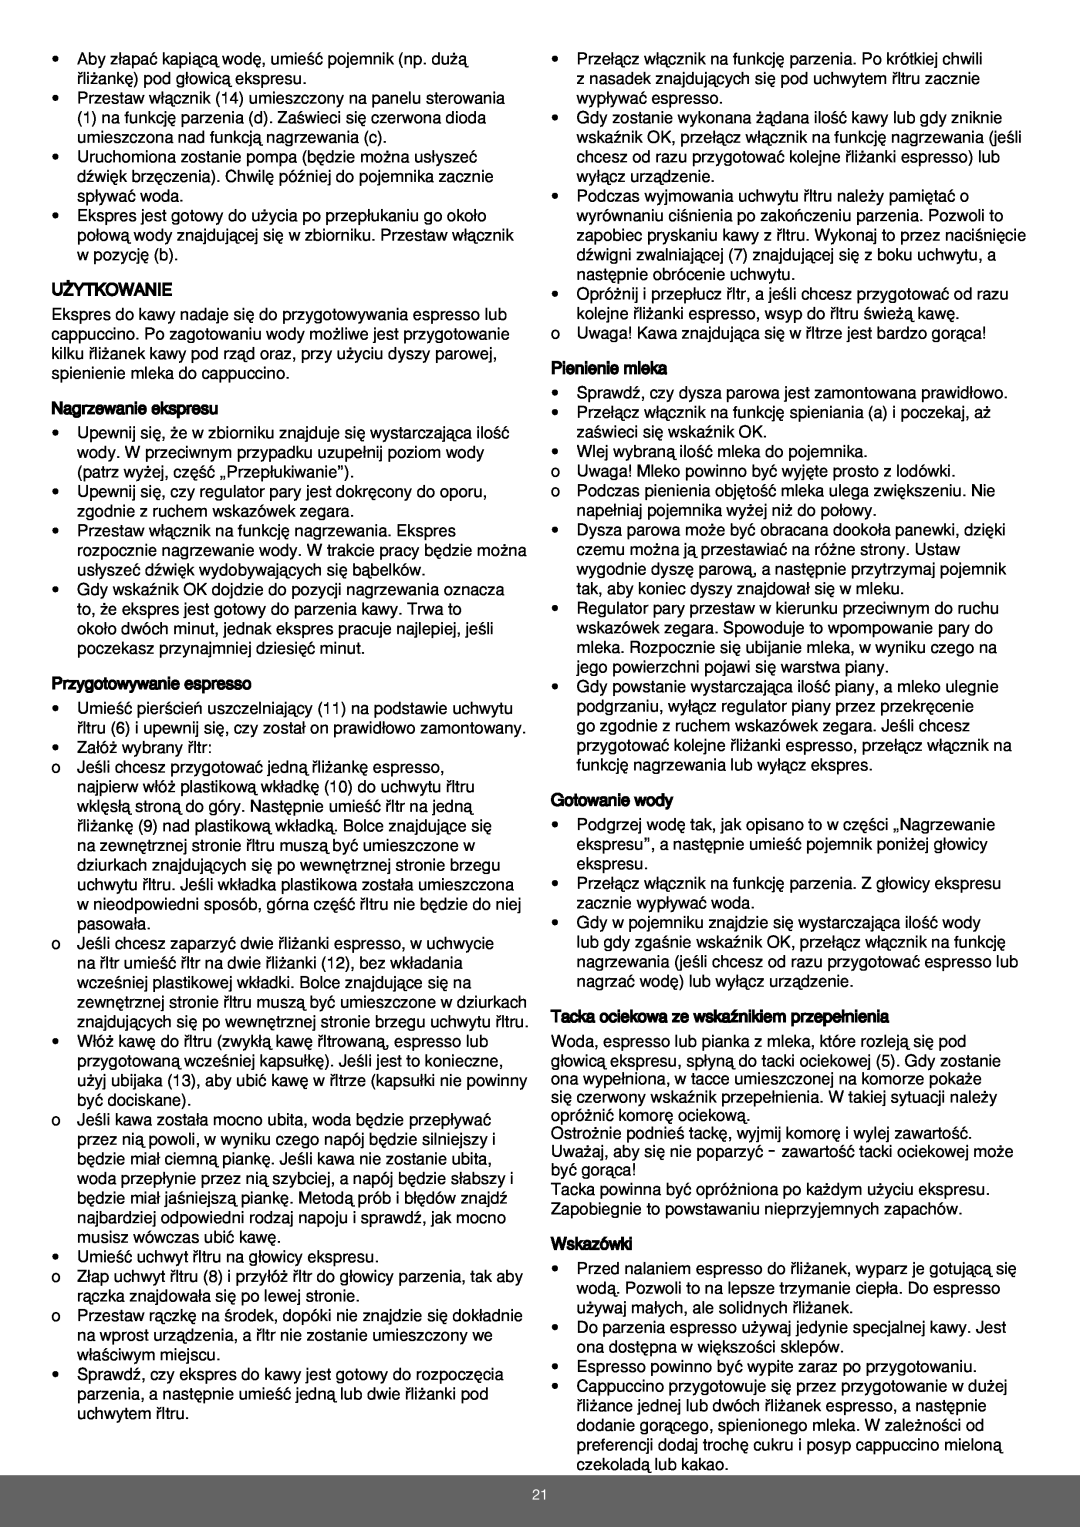 Melissa 645-079 manual Przestaw w∏àcznik 14 umieszczony na panelu sterowania 